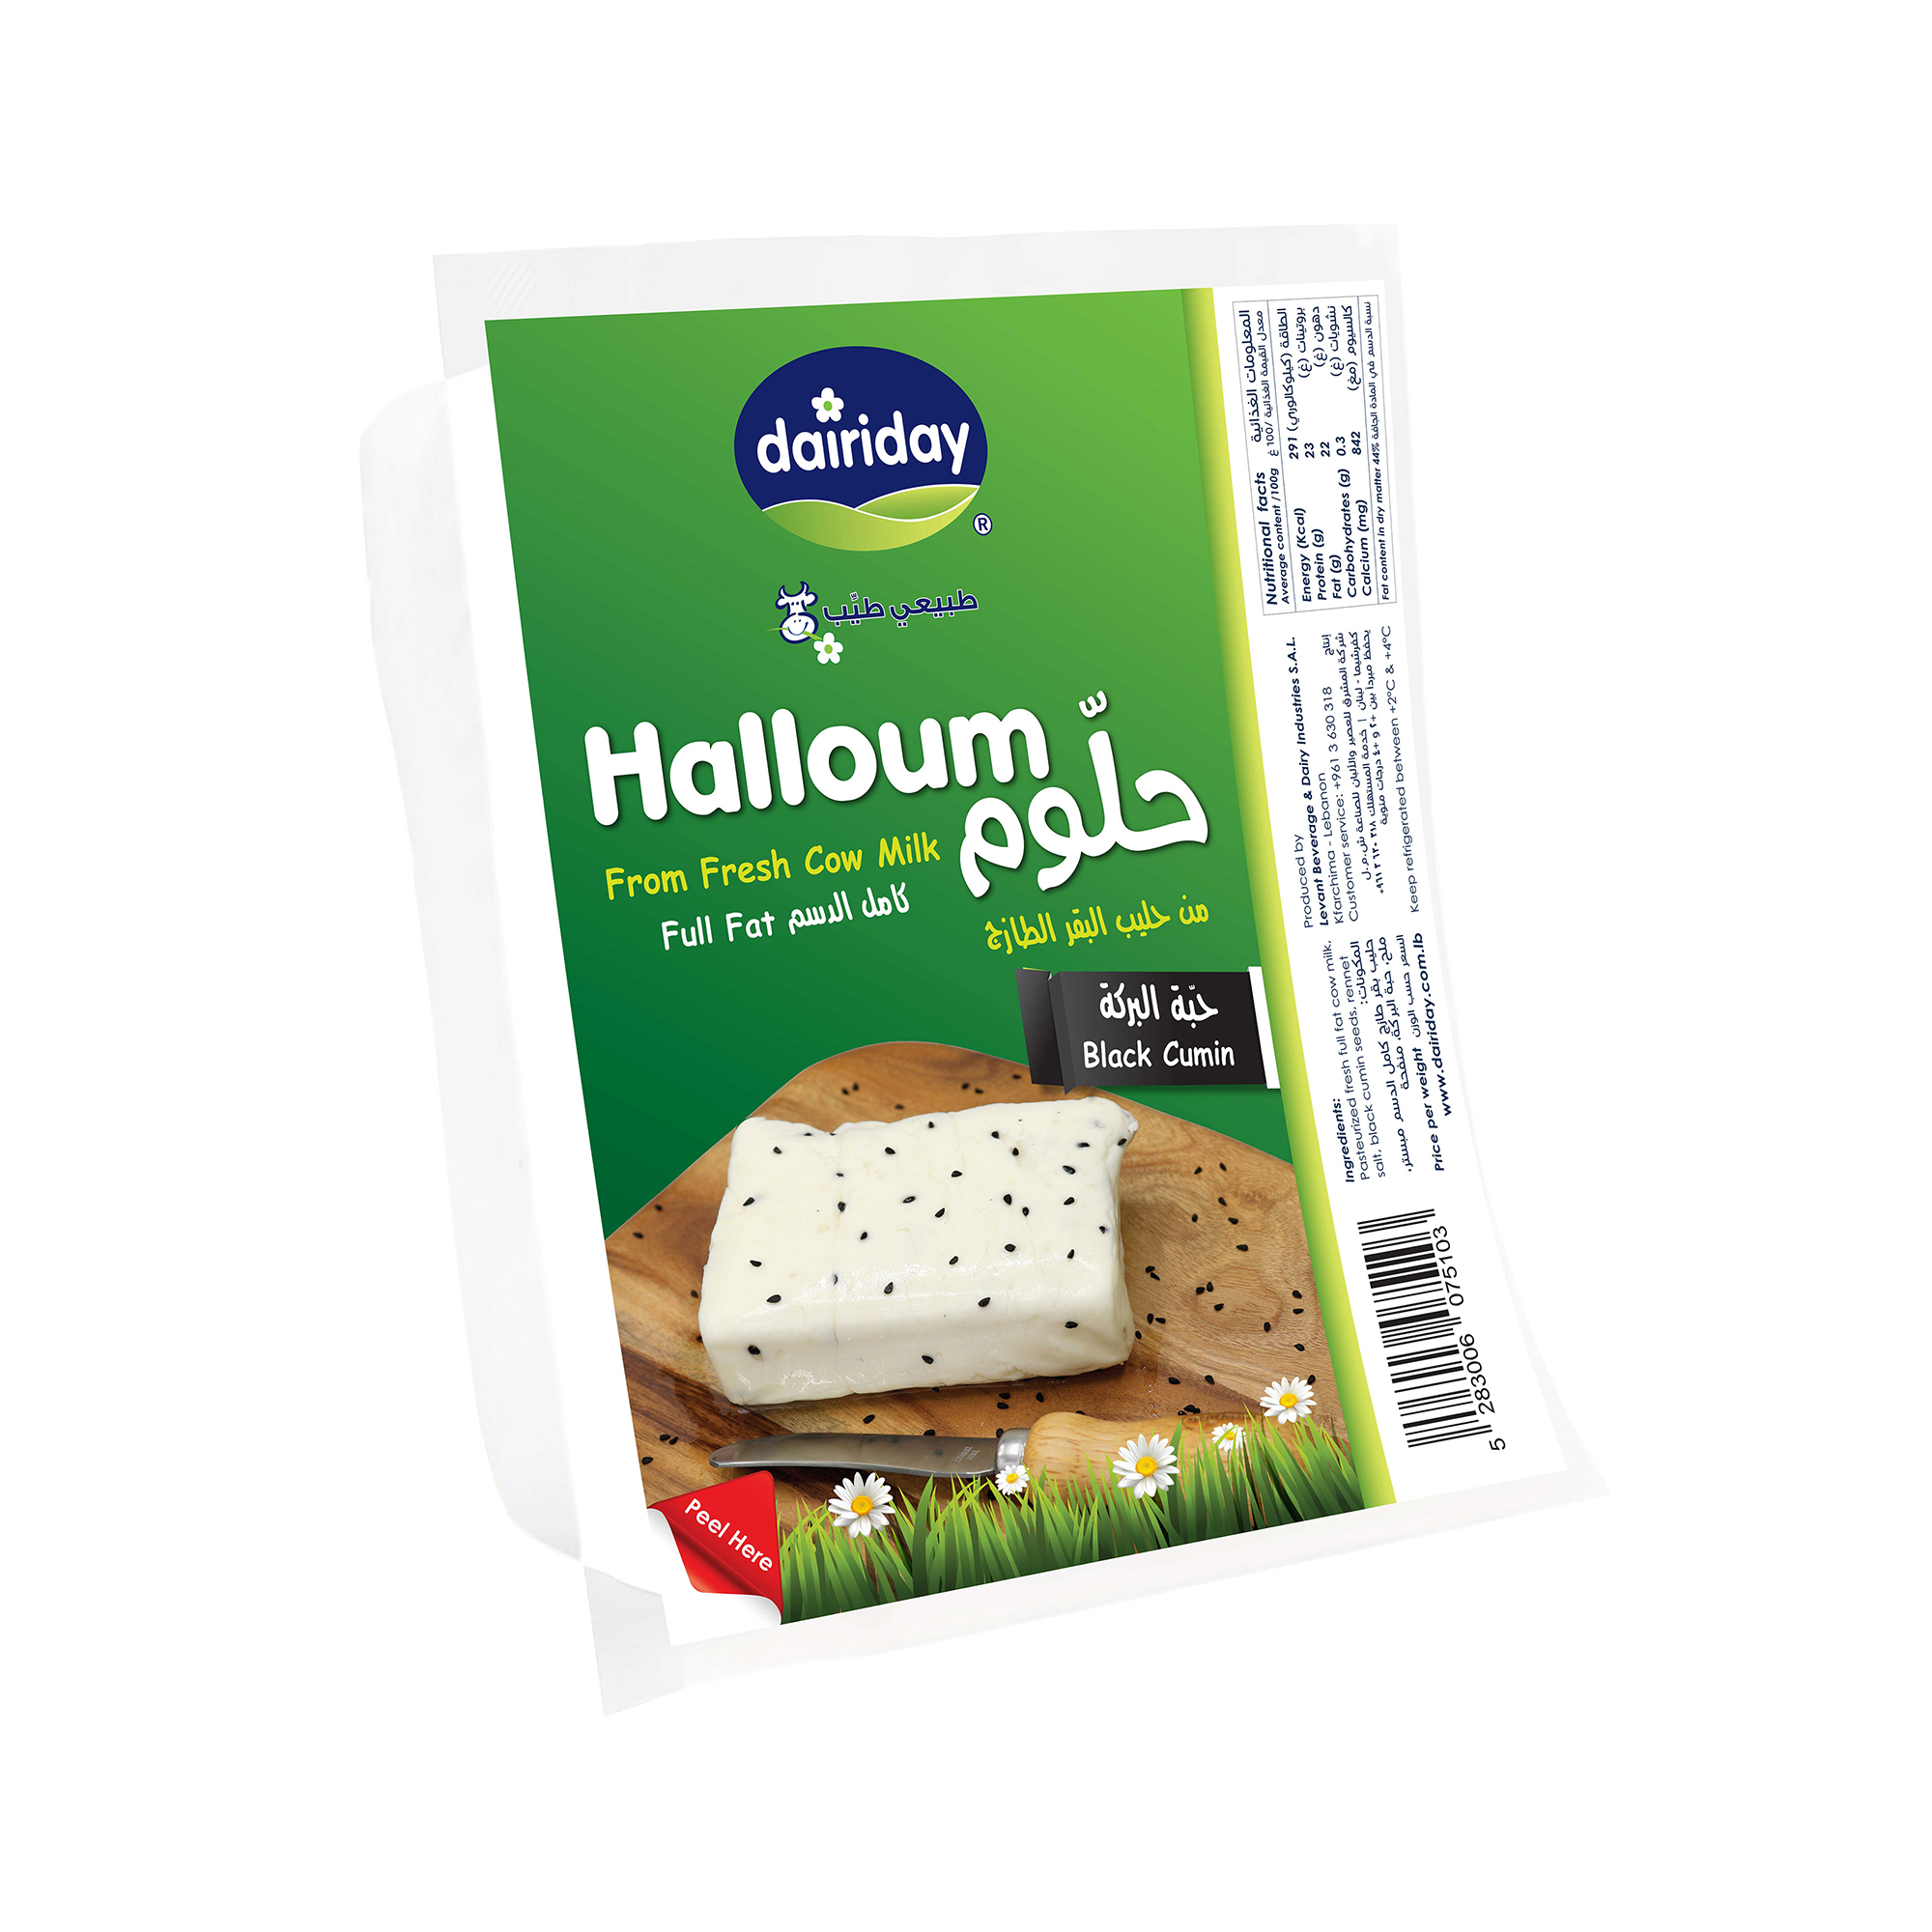 Dairiday-Halloum-Barake-blackcumin-white-cheese